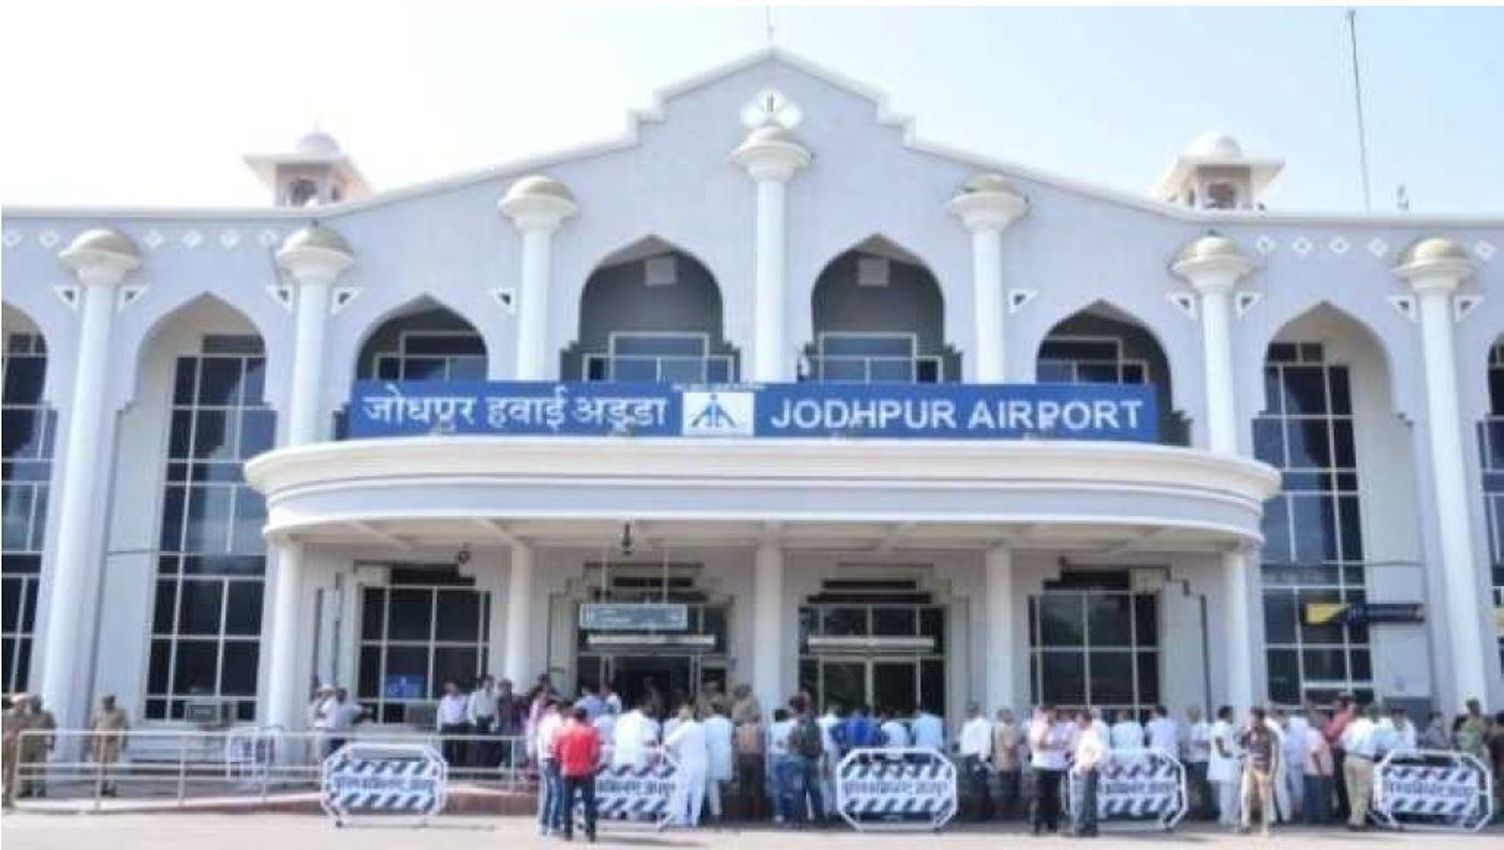  डेढ़ साल बाद जोधपुर एयरपोर्ट से पहली बार सुबह 11 से शाम 5 बजे तक लगातार उड़ानें